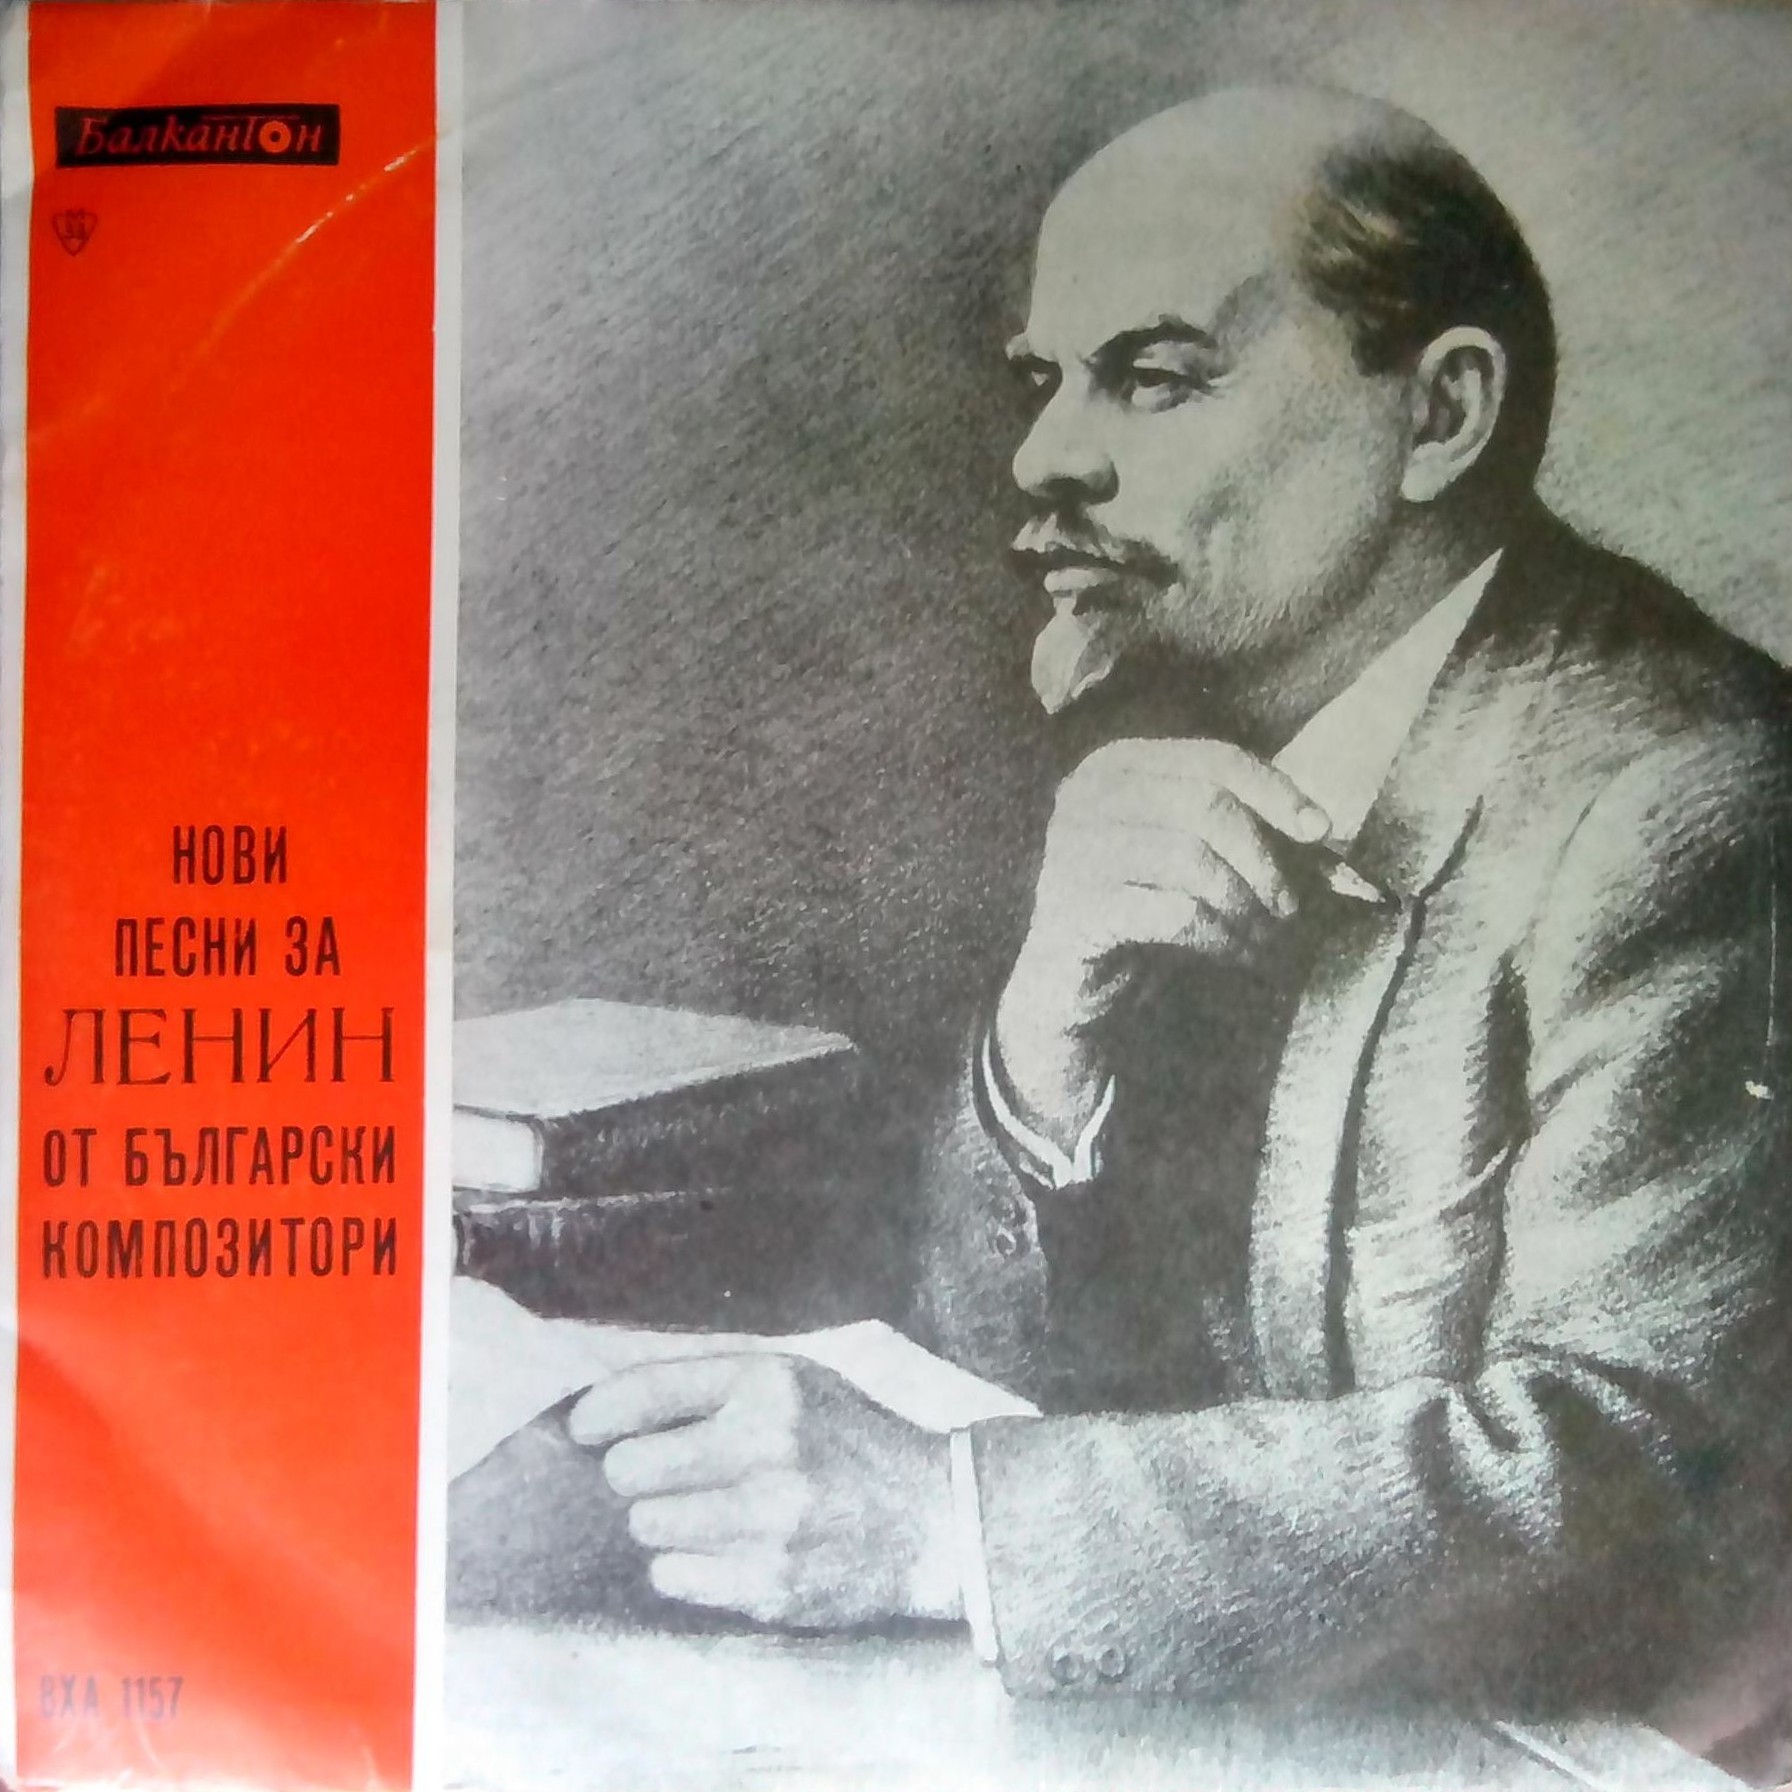 Нови песни за Ленин от български композитори